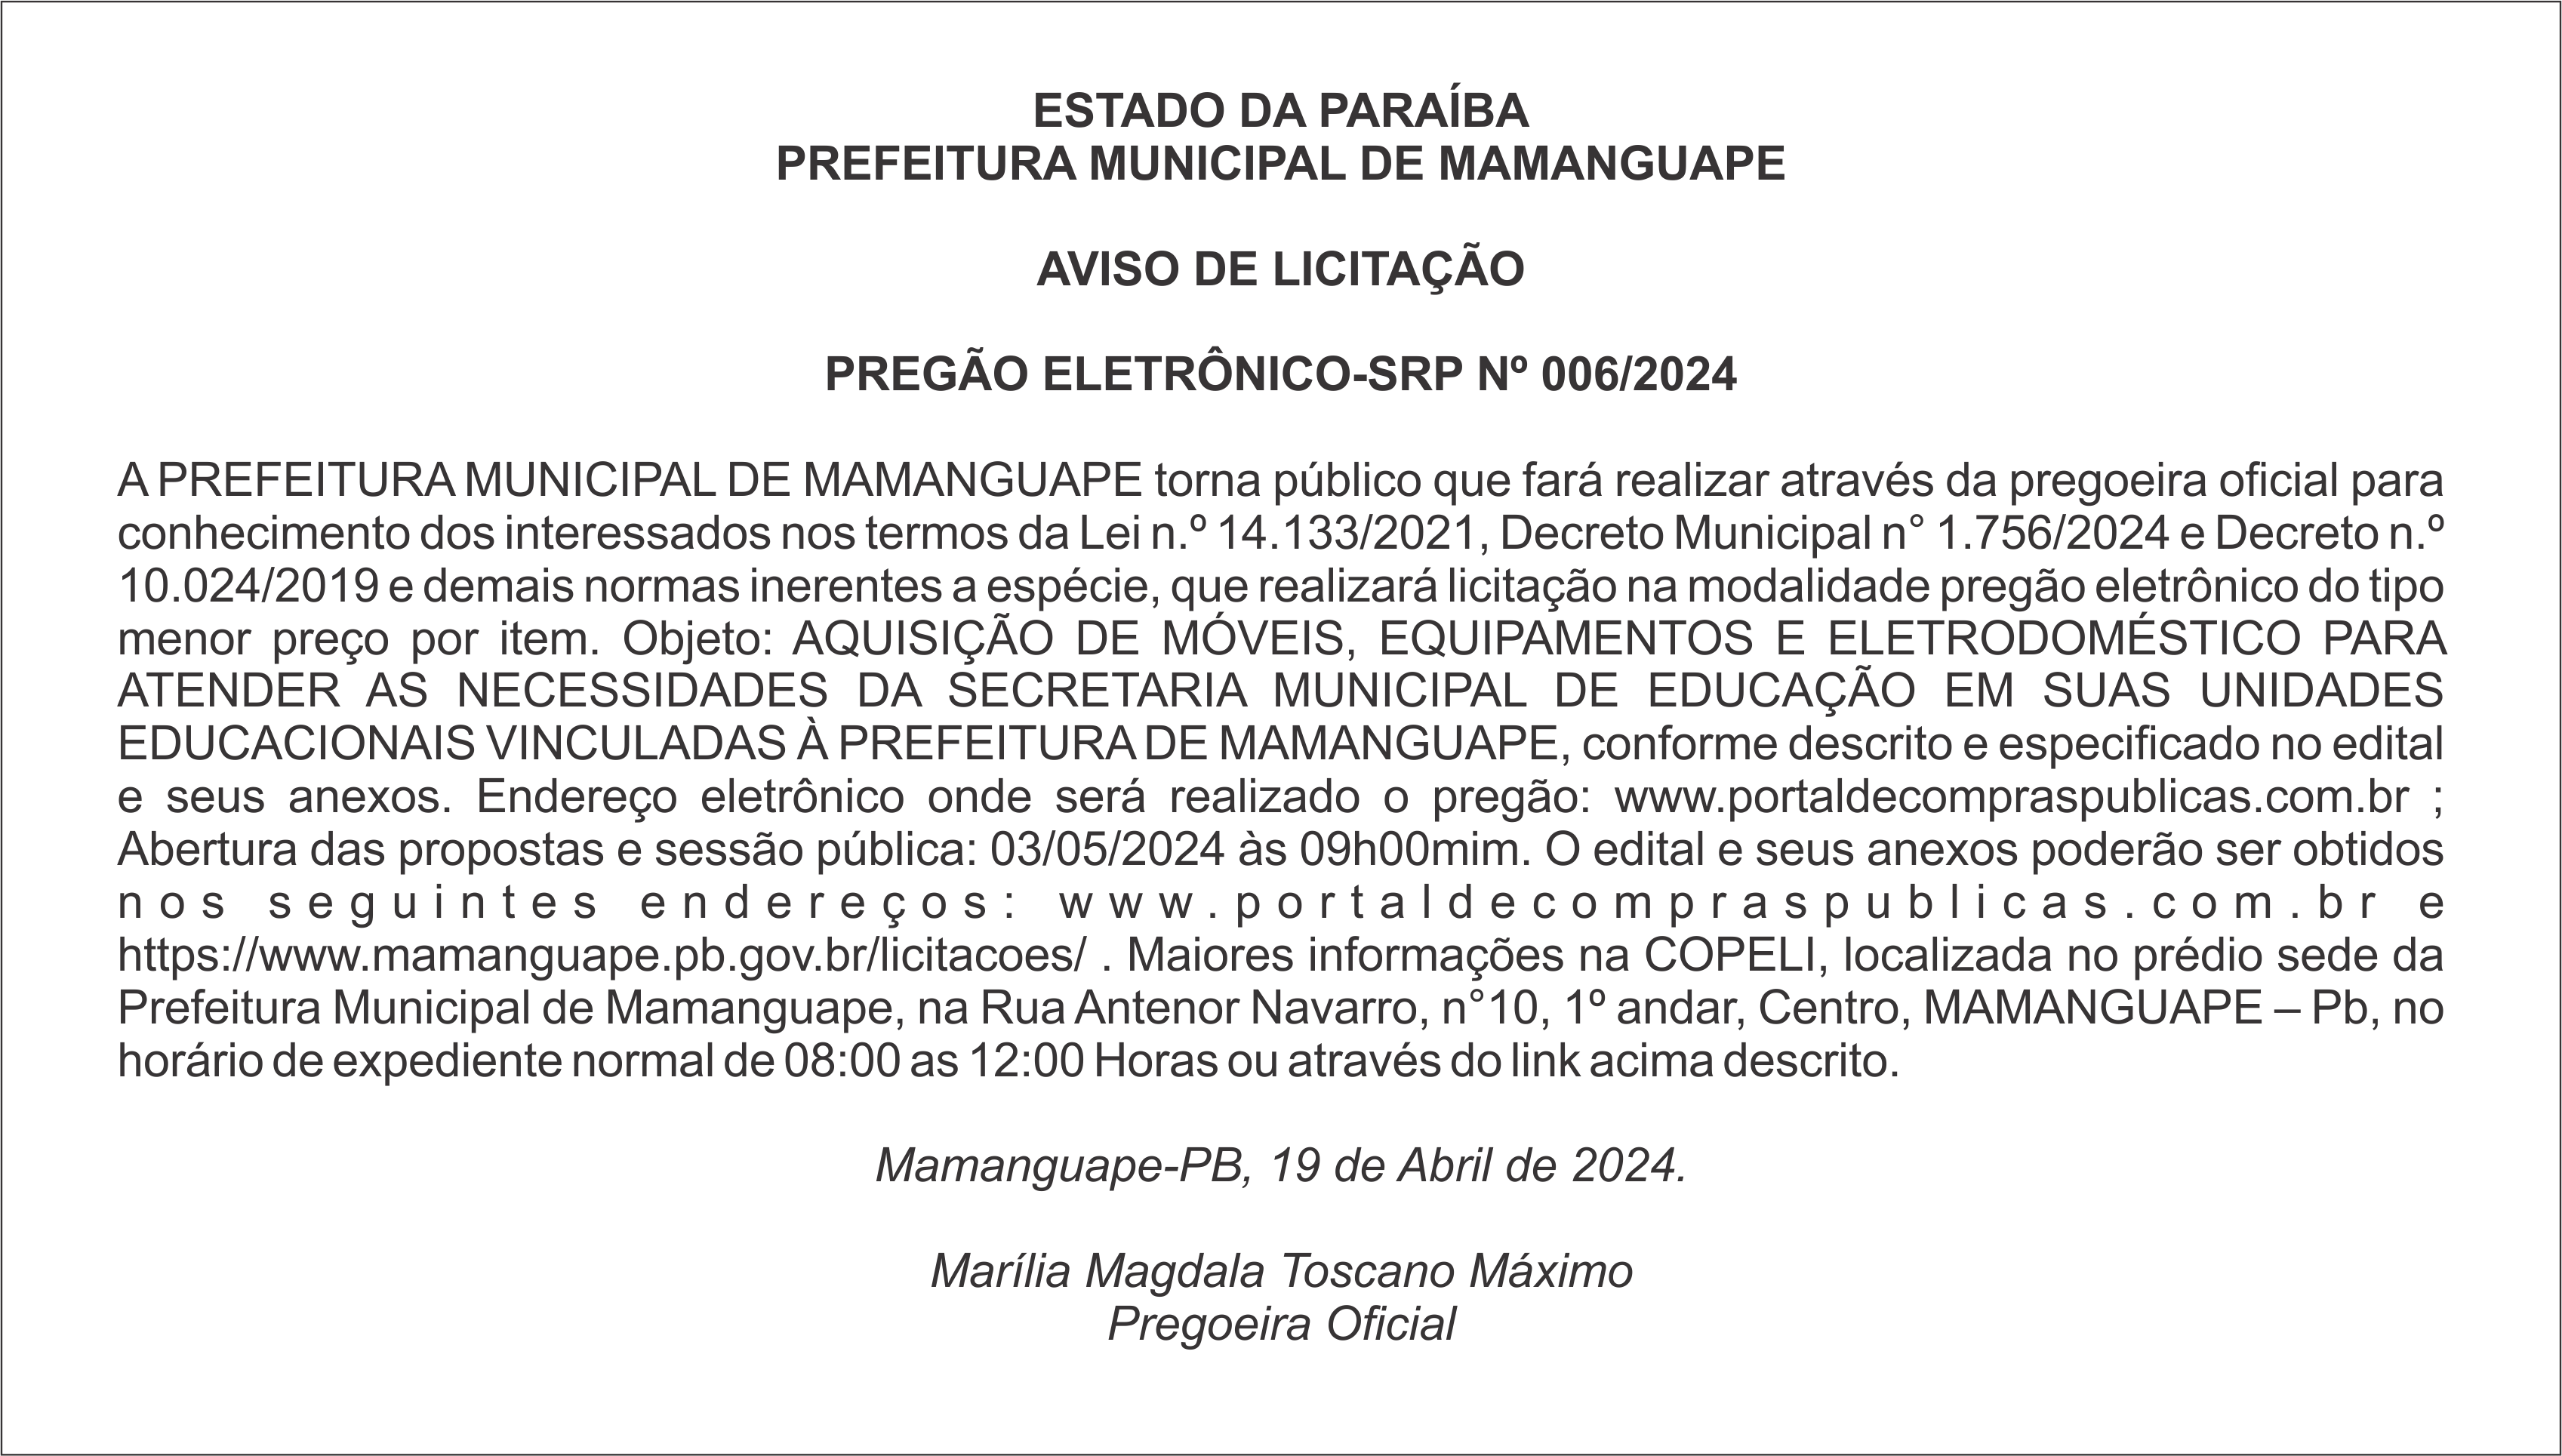 PREFEITURA MUNICIPAL DE MAMANGUAPE  – AVISO DE LICITAÇÃO – PREGÃO ELETRÔNICO-SRP Nº 006/2024